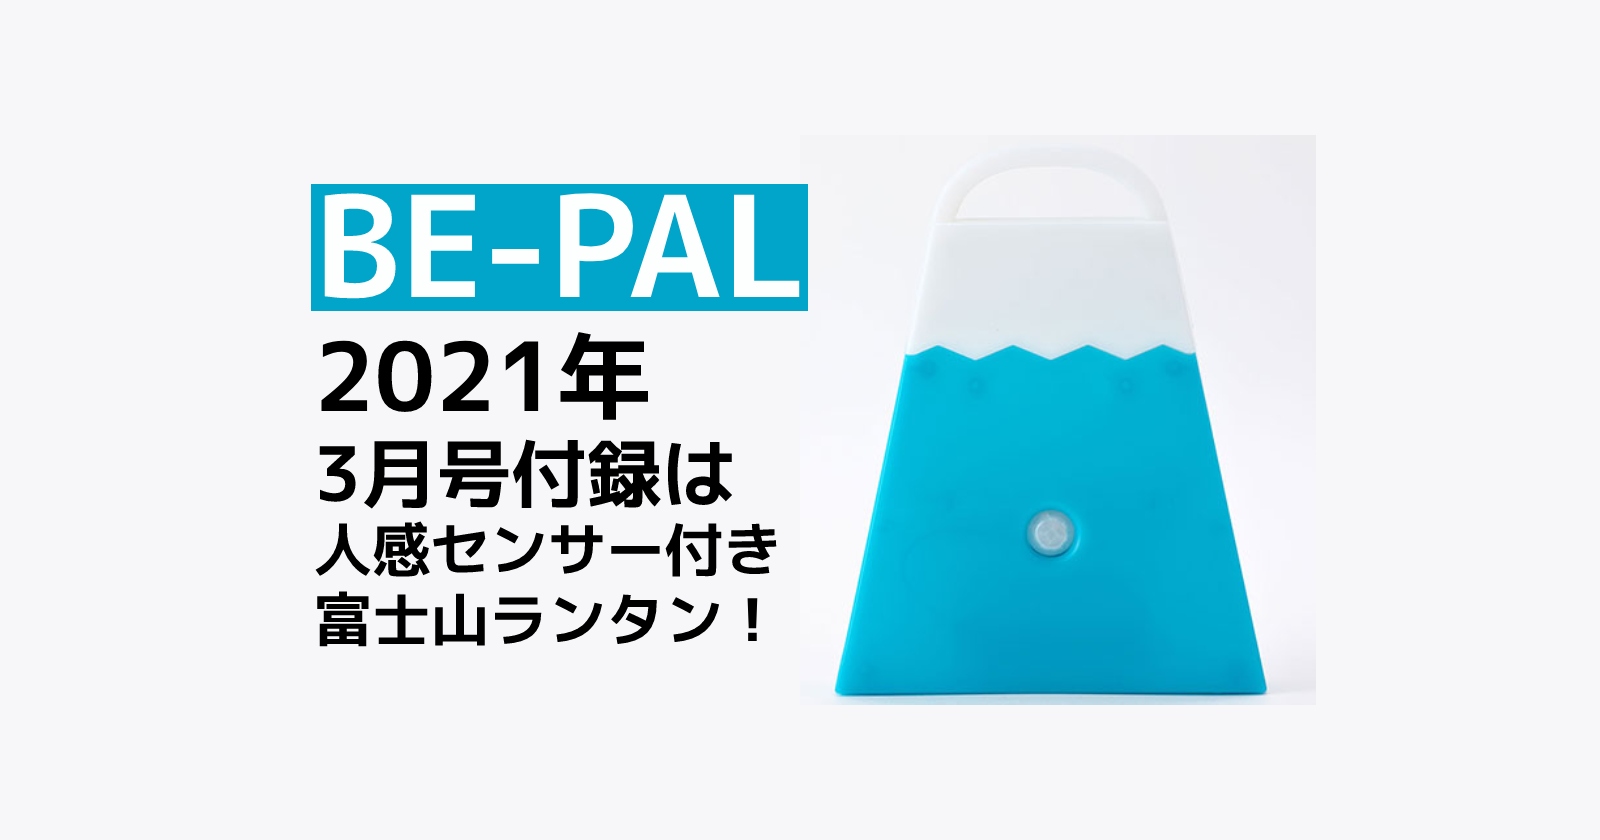 Be Pal ビーパル 21年3月号の付録は人感センサー付き富士山ランタン キャンプ アウトドアのtakibi タキビ